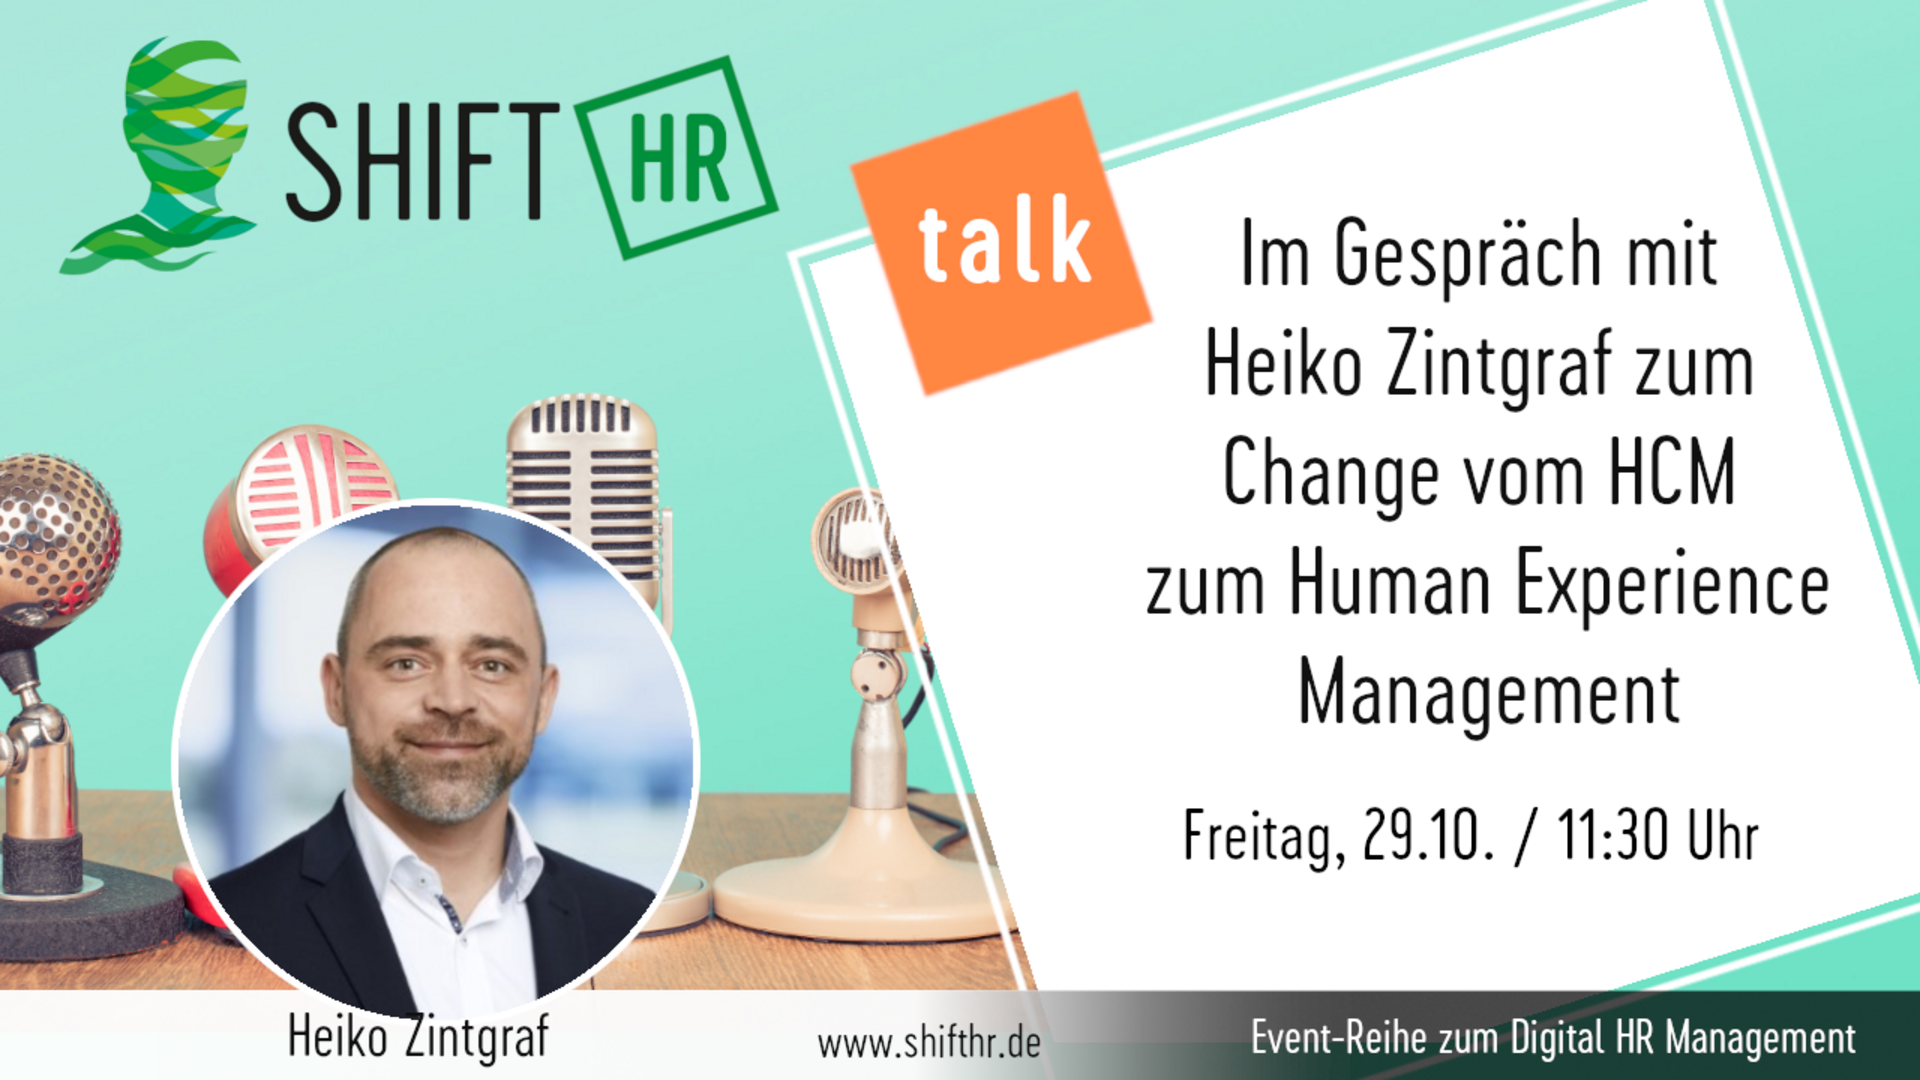 Im Gespräch mit Heiko Zintgraf zum Change vom HCM zum Human Experience Management